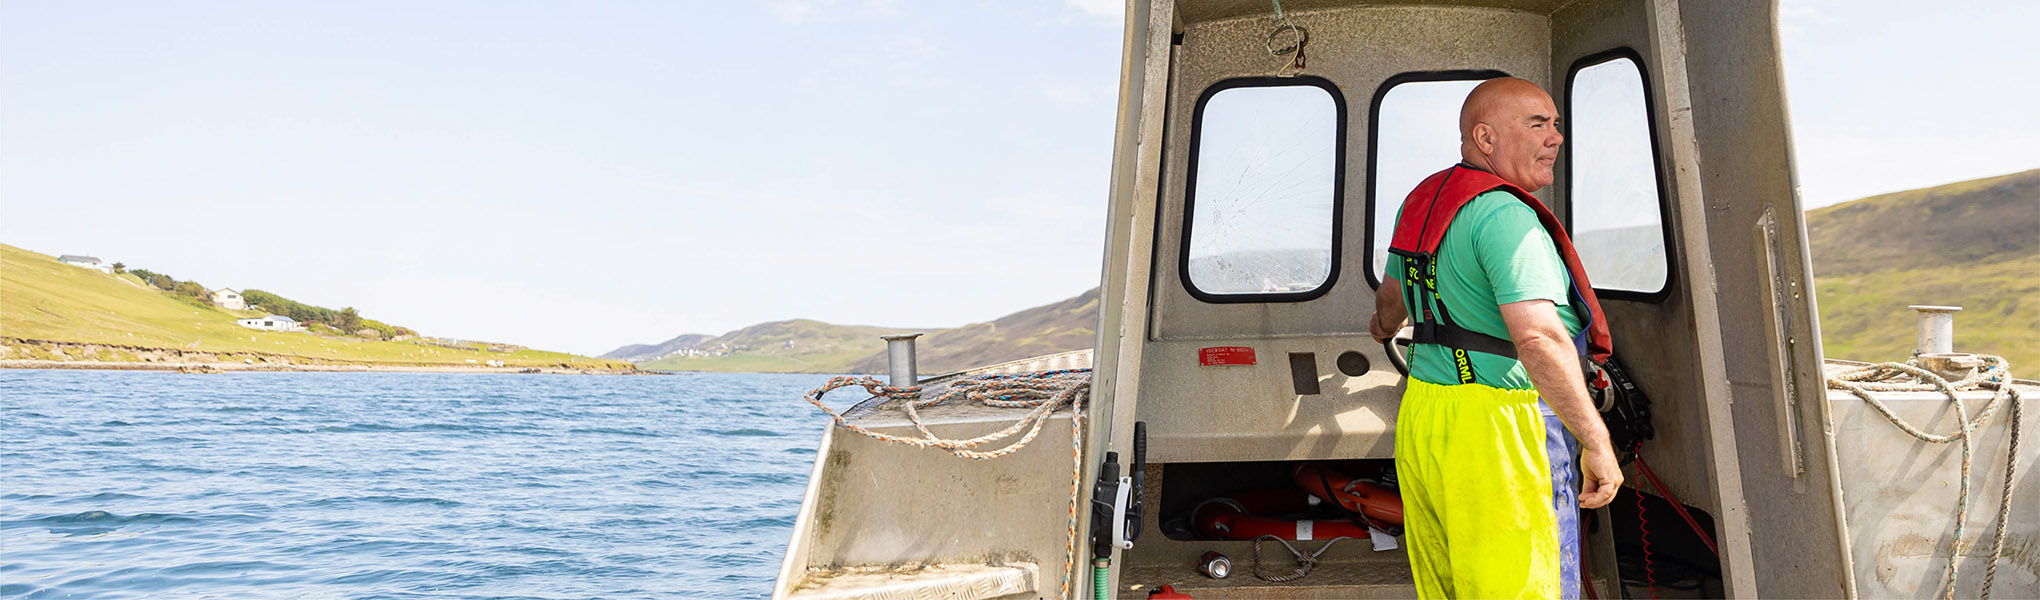 Shetland mussel farmer on boat